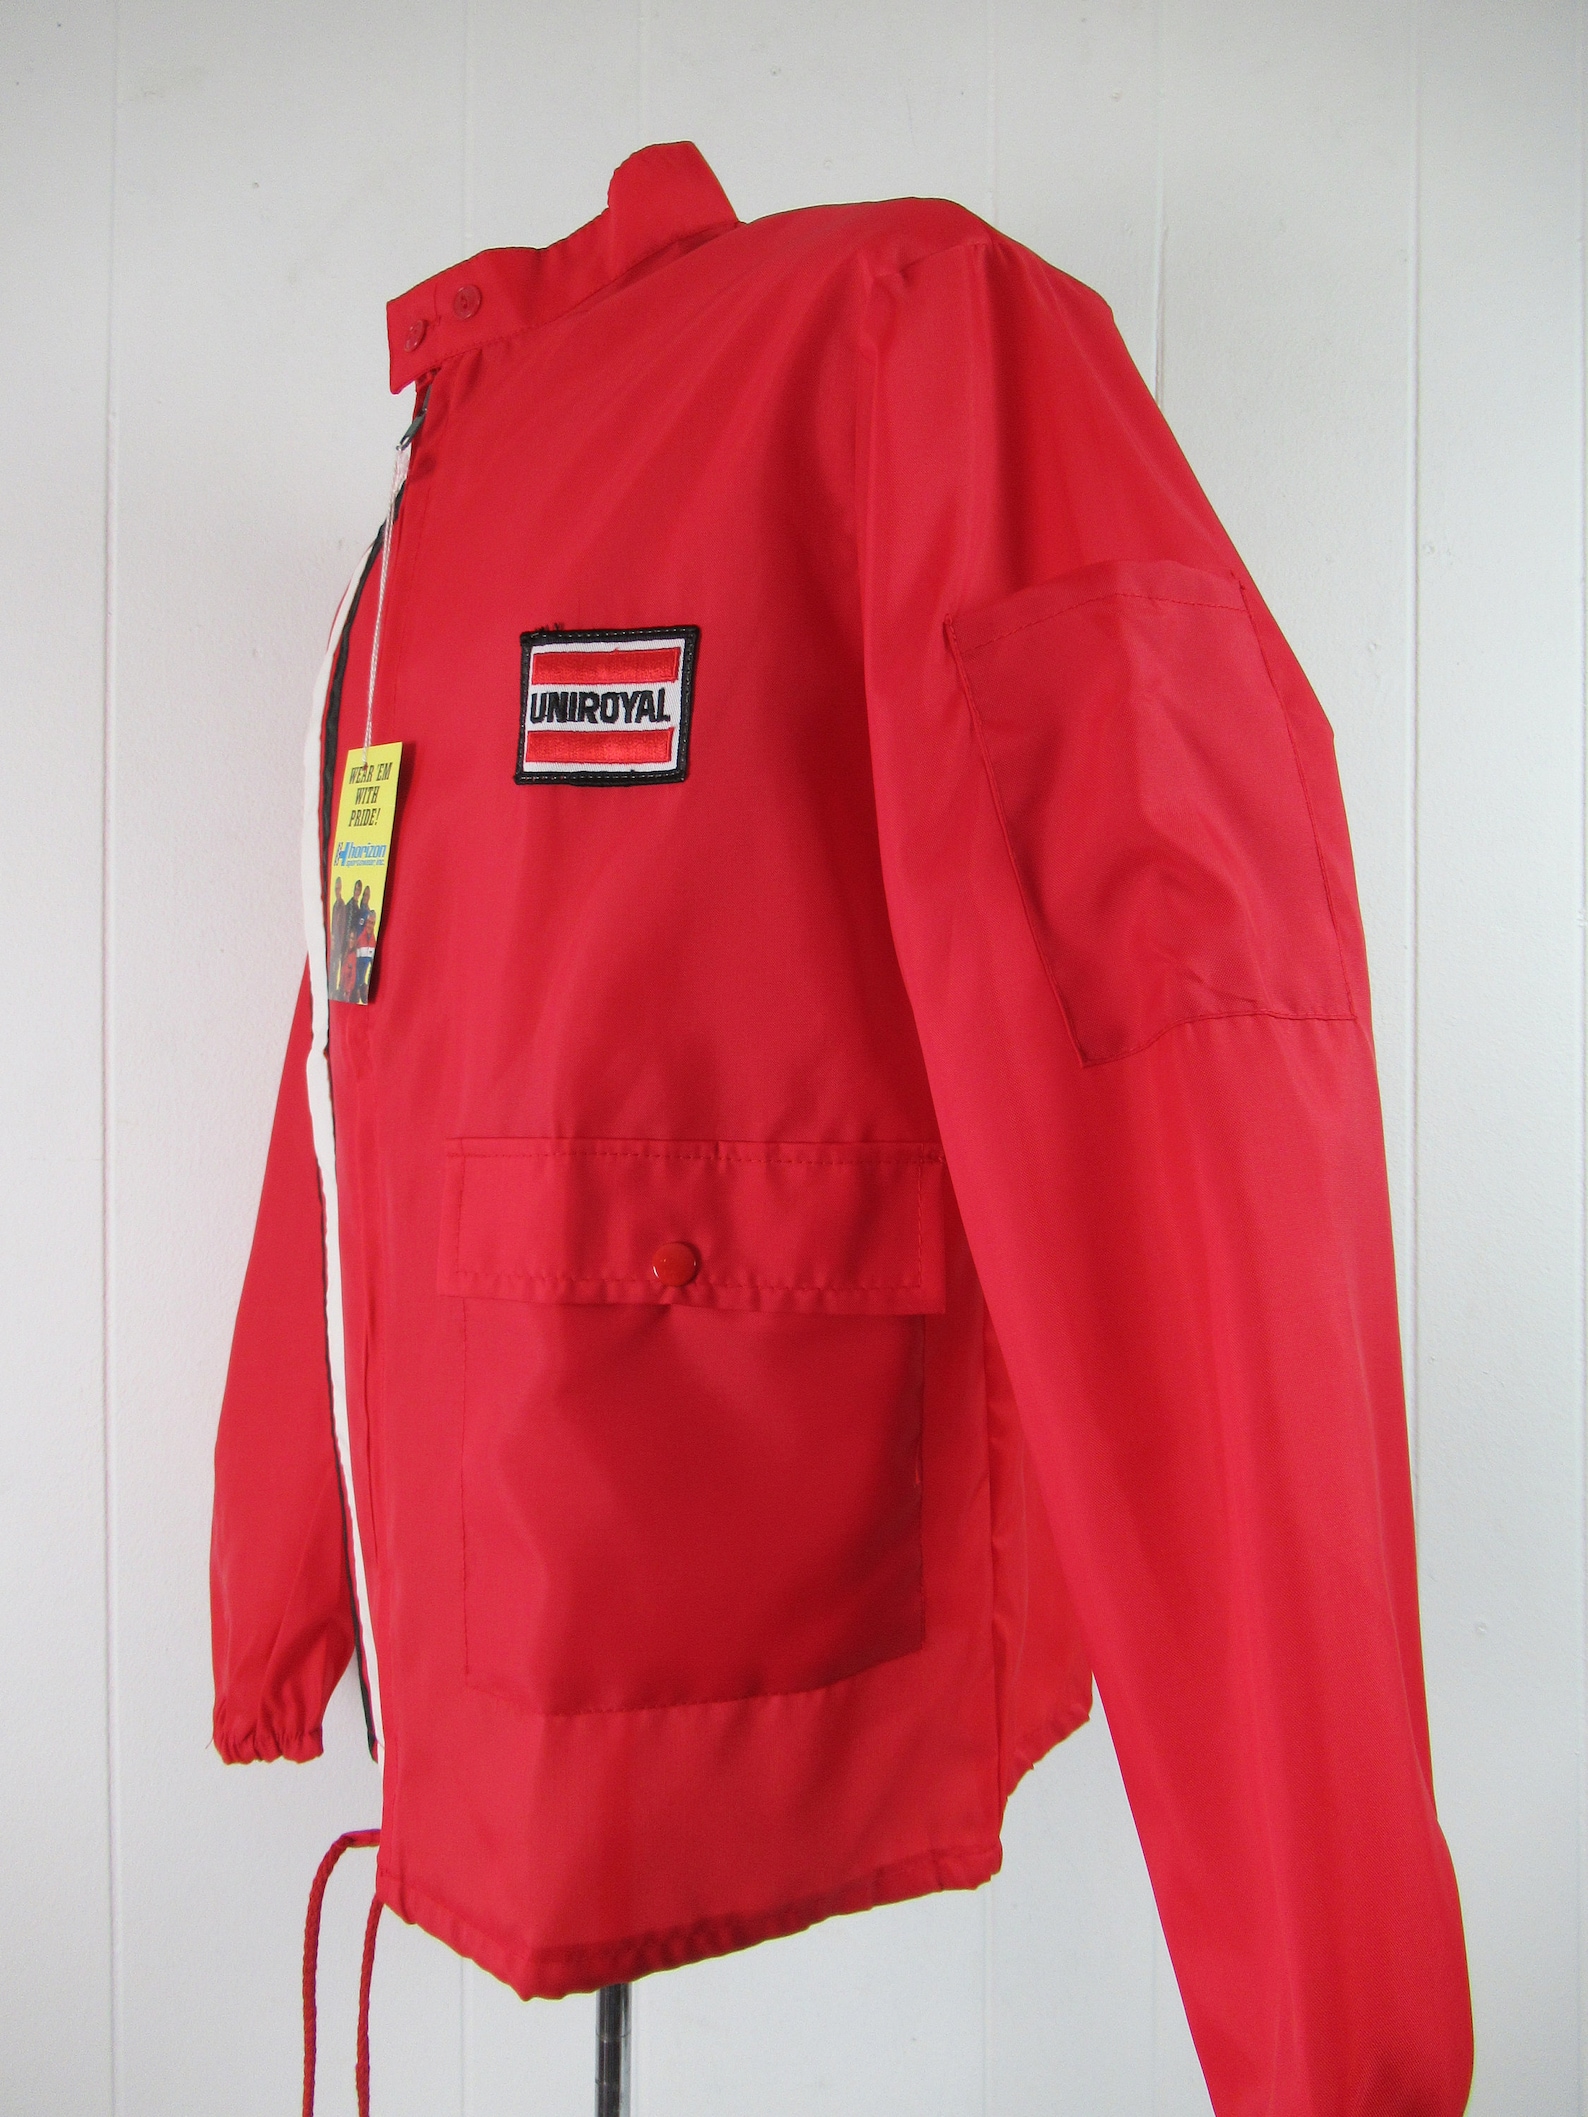 Vintage Jacket 1960s Jacket Racing Jacket Uniroyal Jacket | Etsy